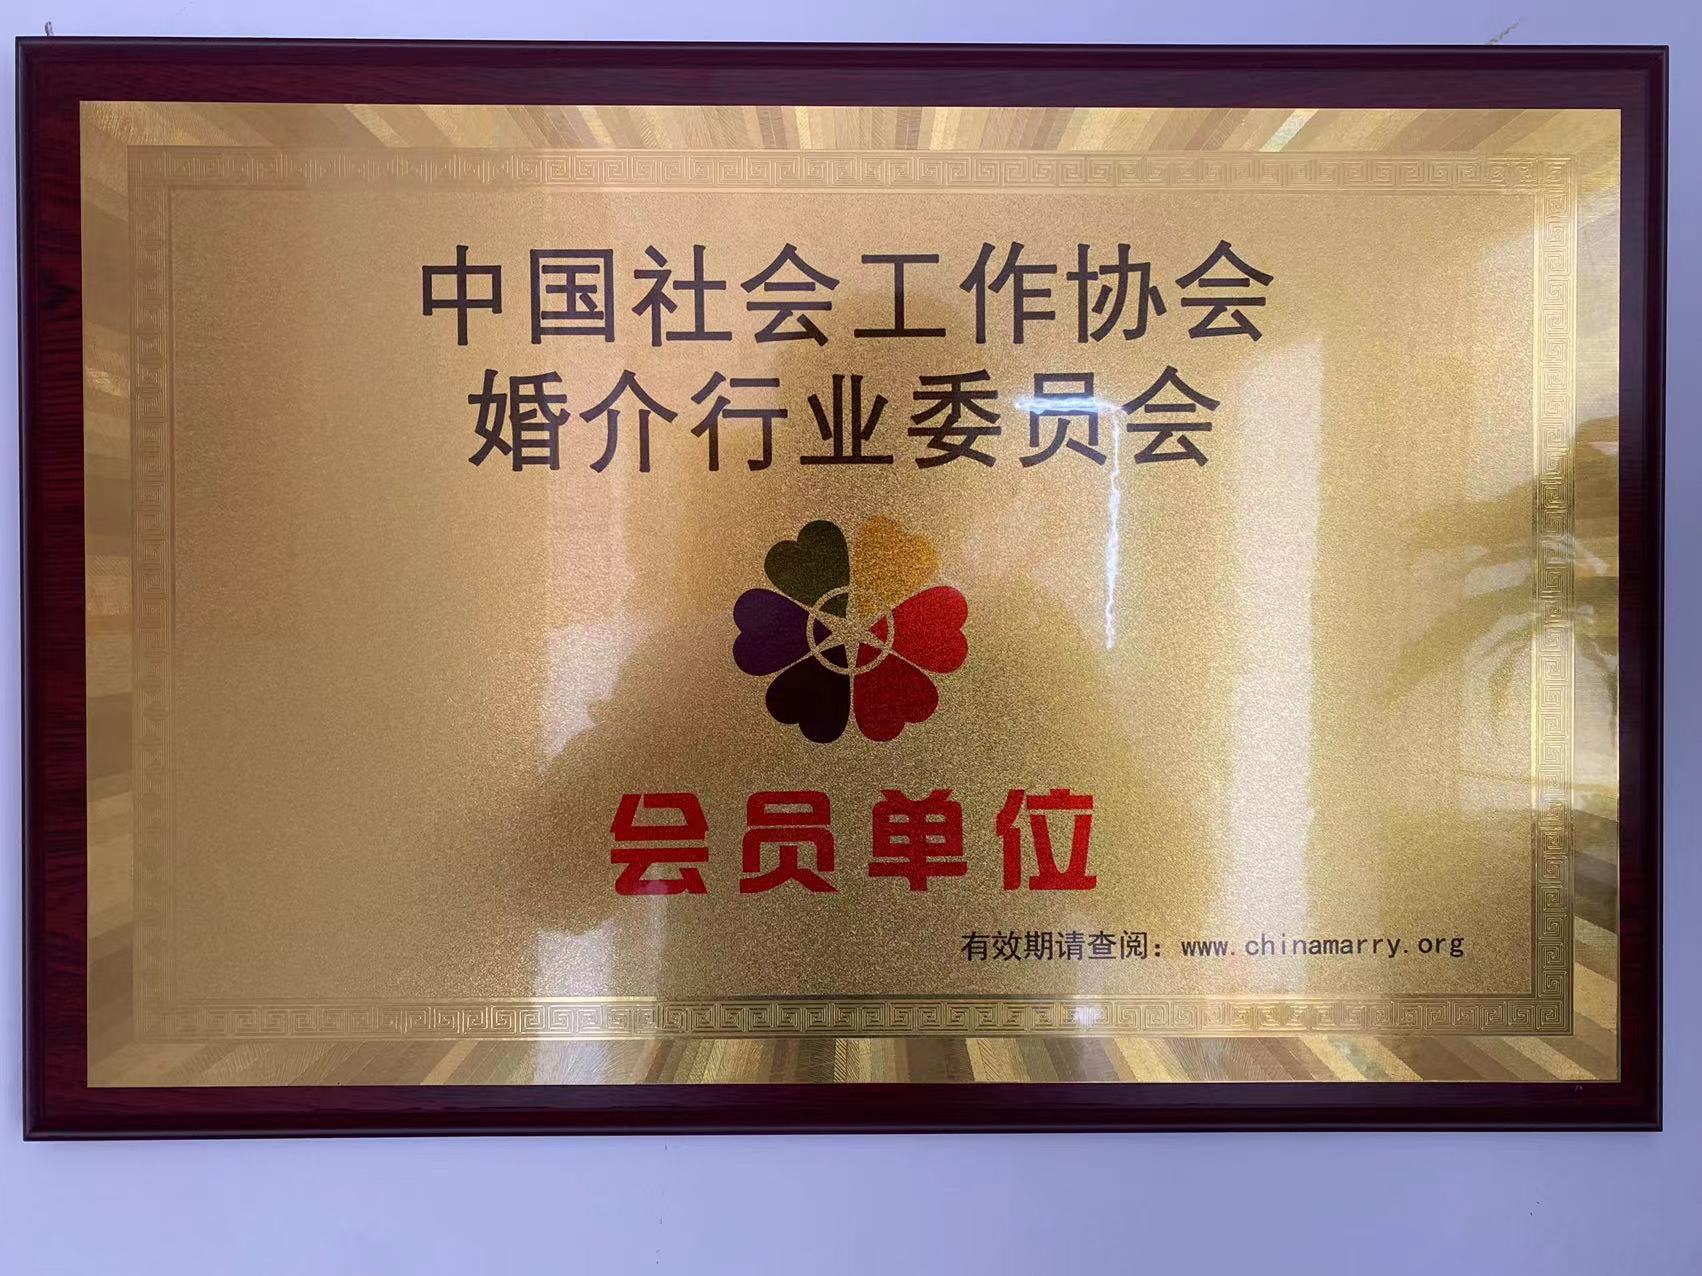 中国社会工作协会婚介行业委员会会员单位